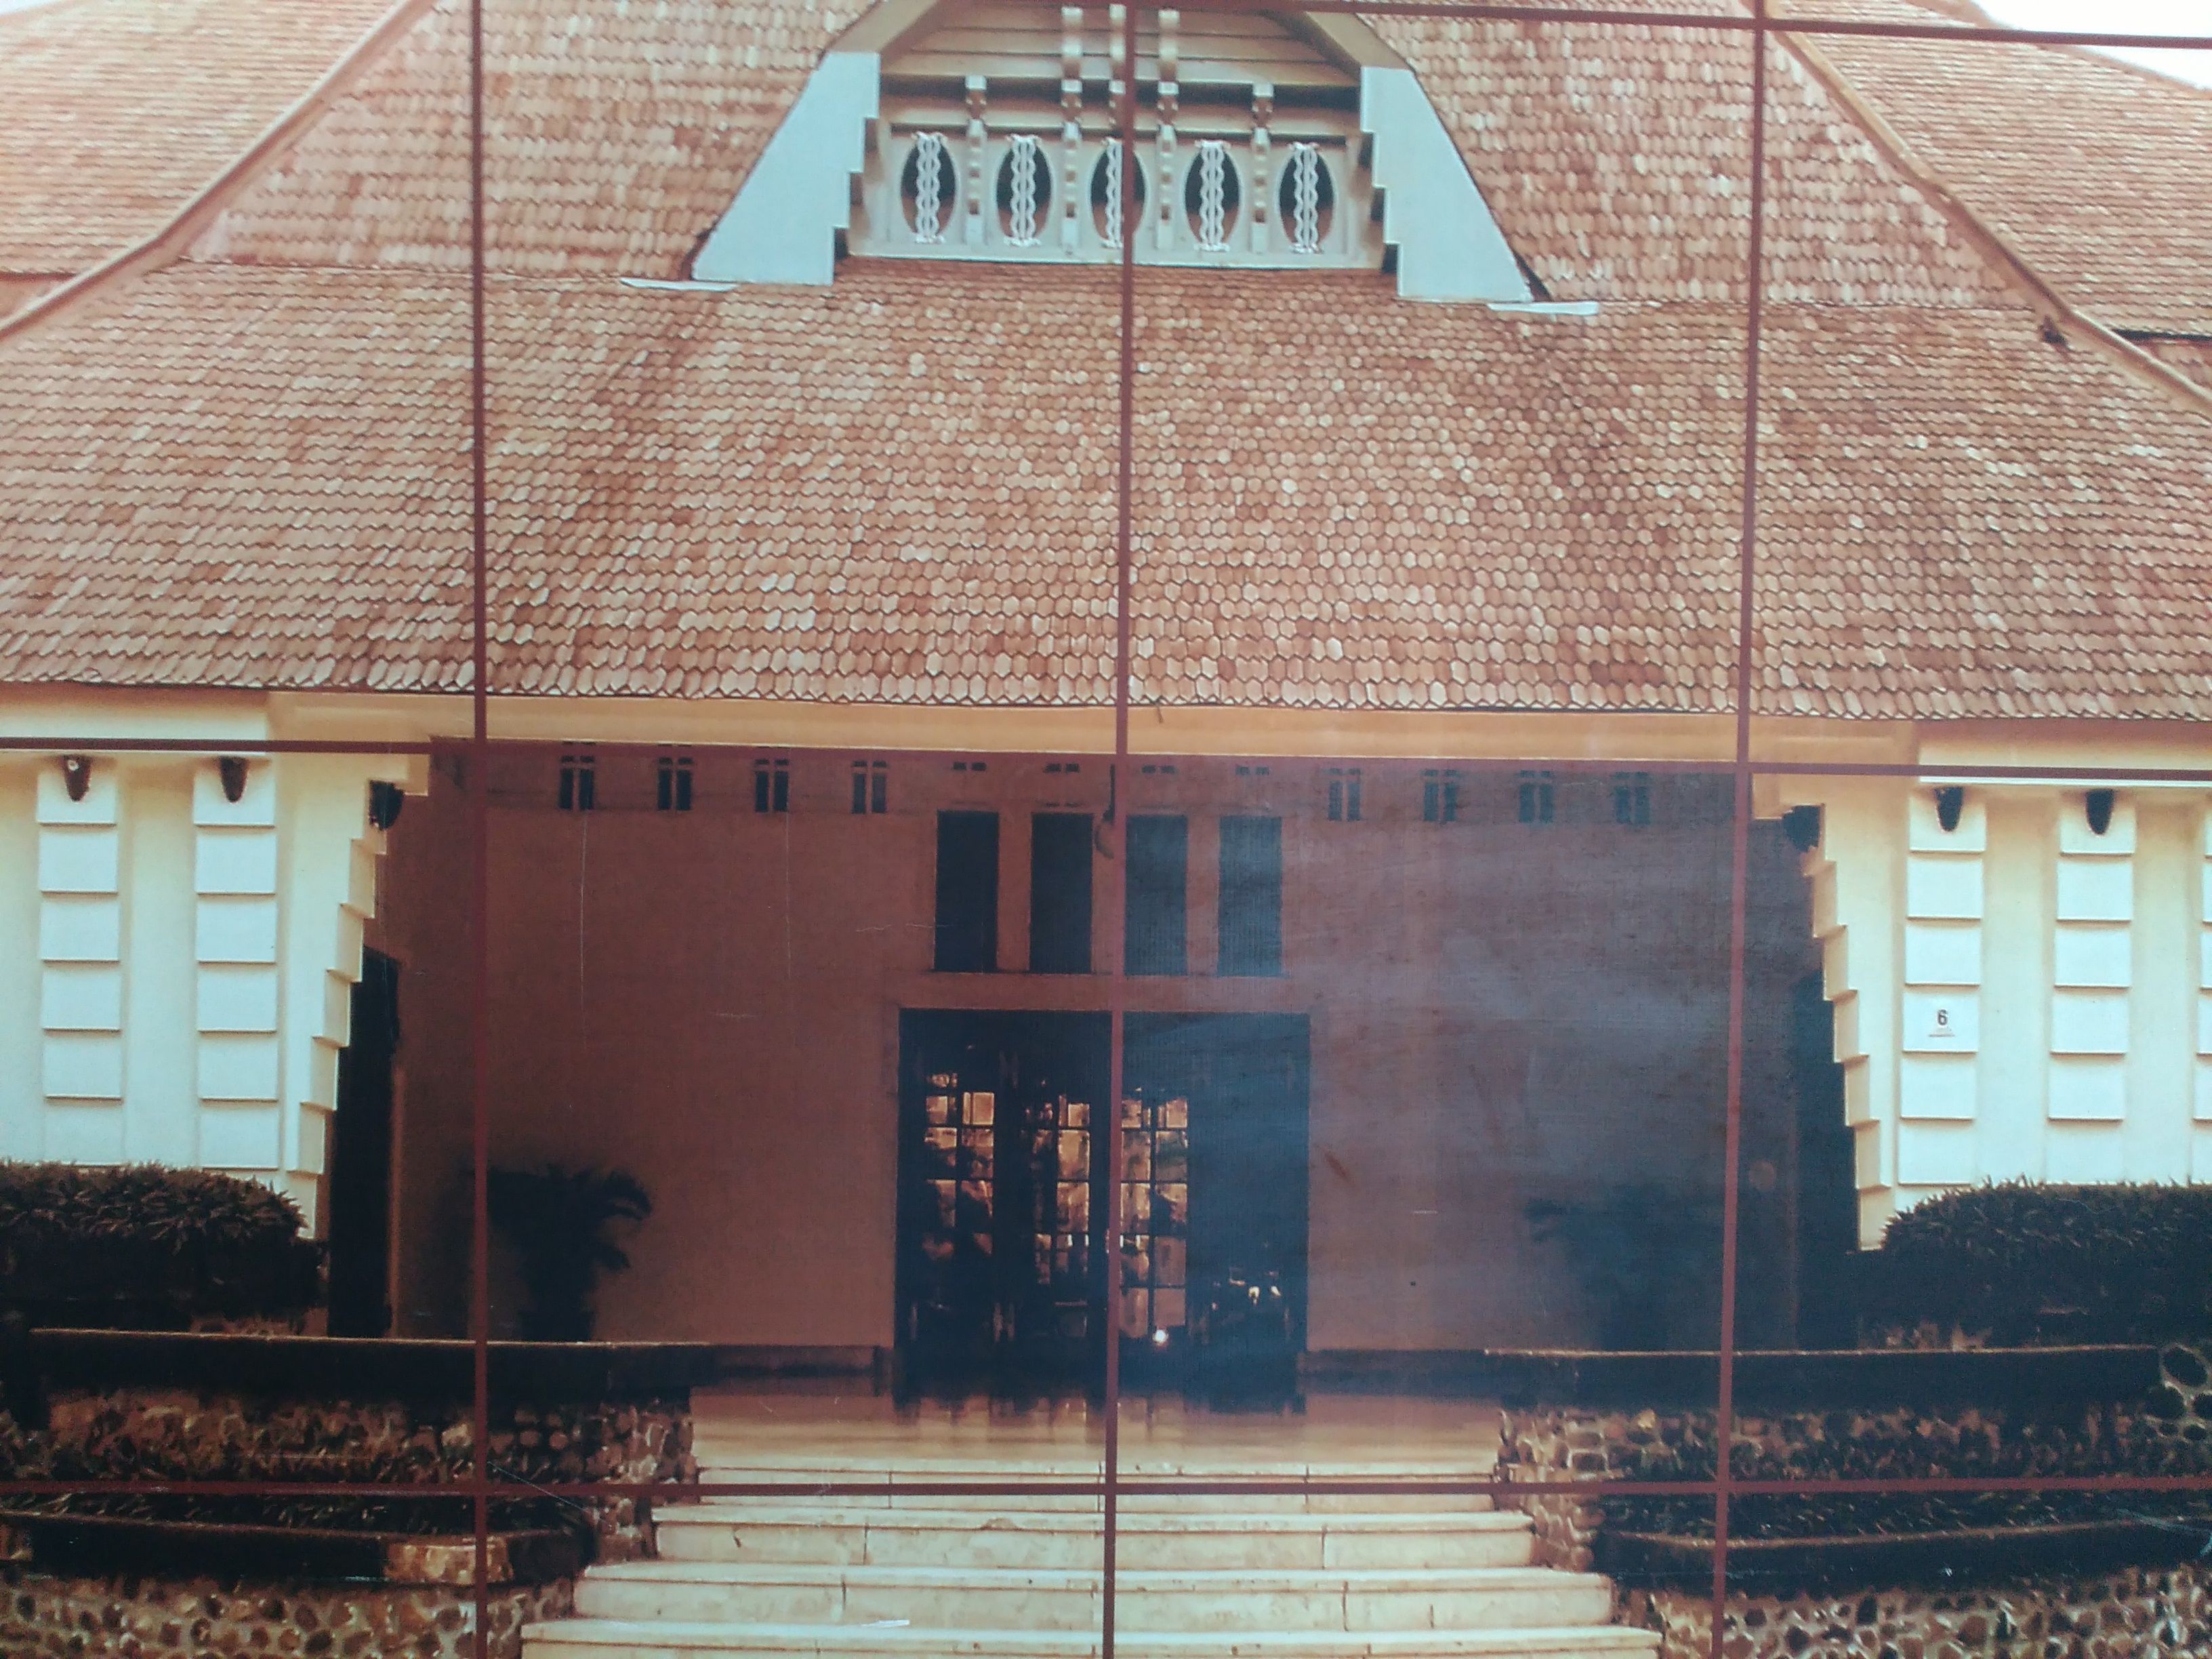 perpustakaan ini dahulu merupakan tempat tinggal gubernur de javasche bank, surabaya dan sekarang ini merupakan salah satu cagar budaya di Surabaya